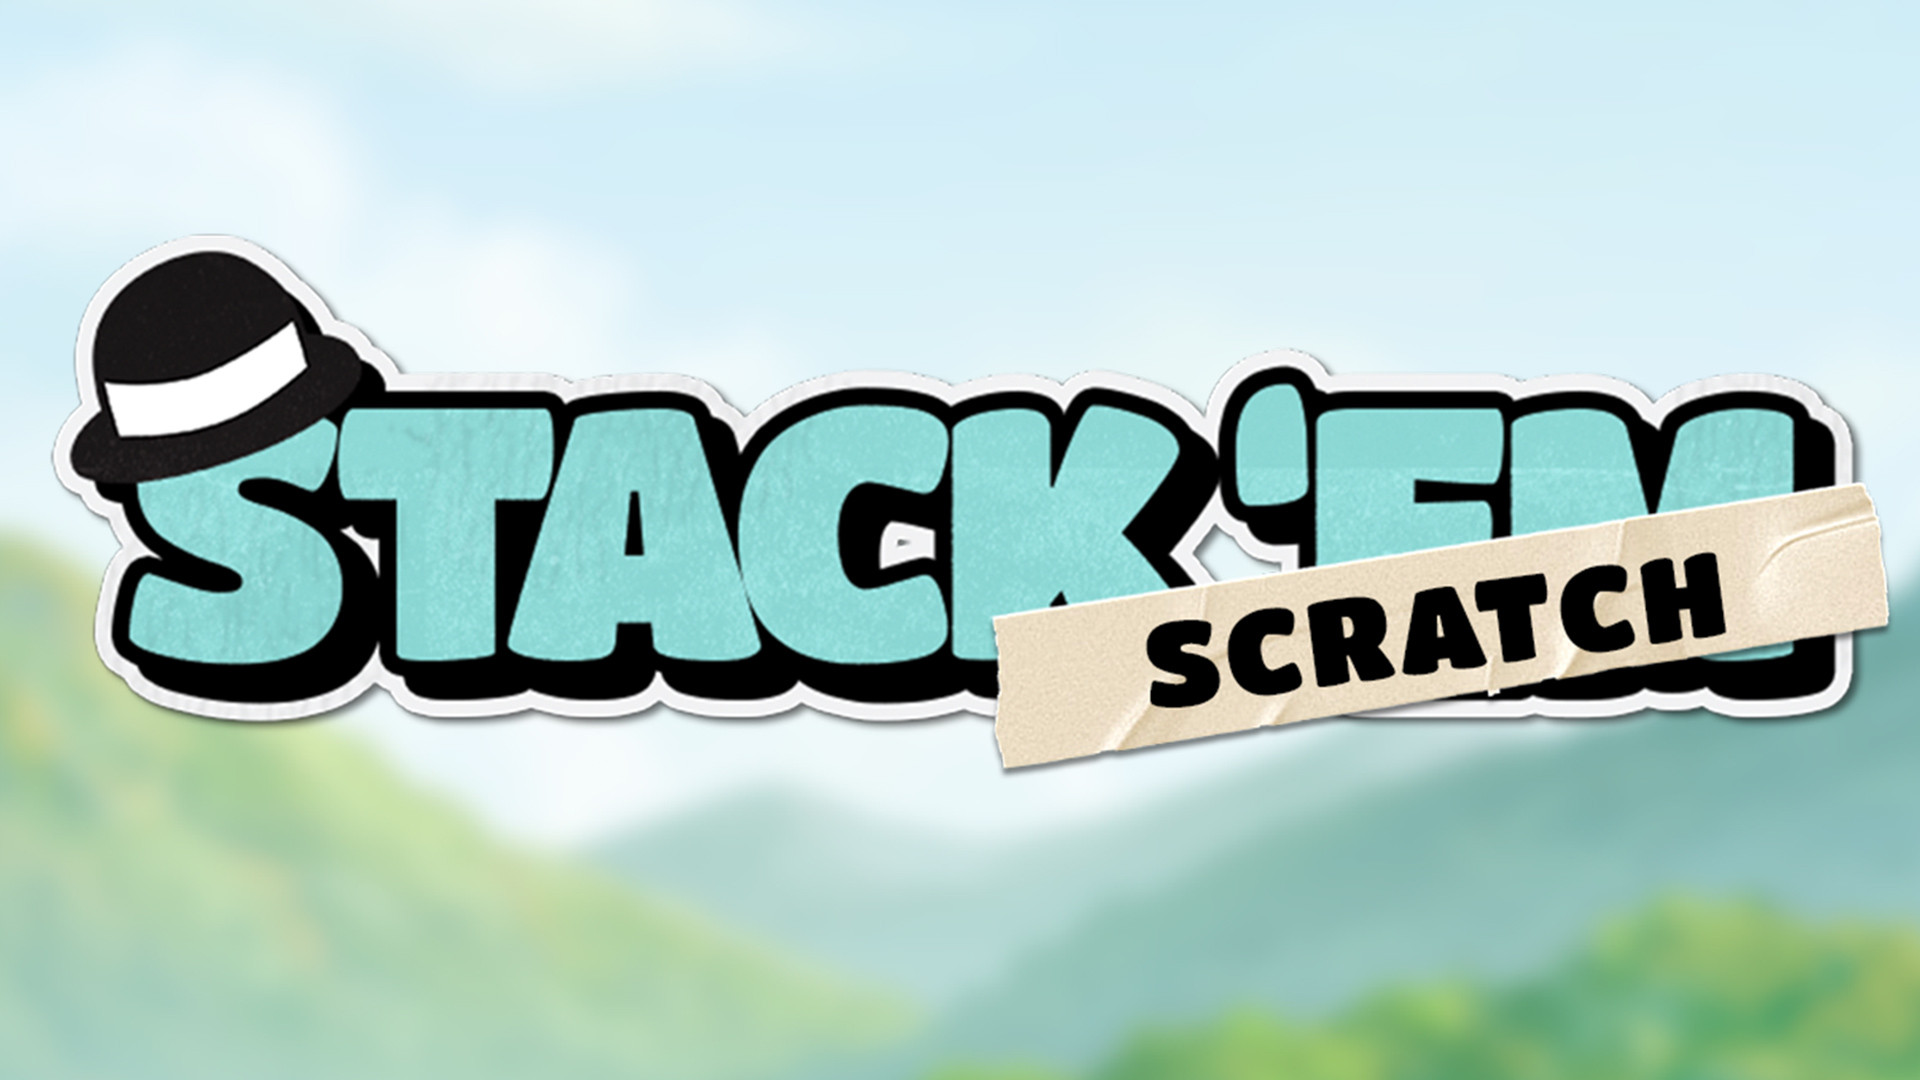 Stack ‘em Scratch